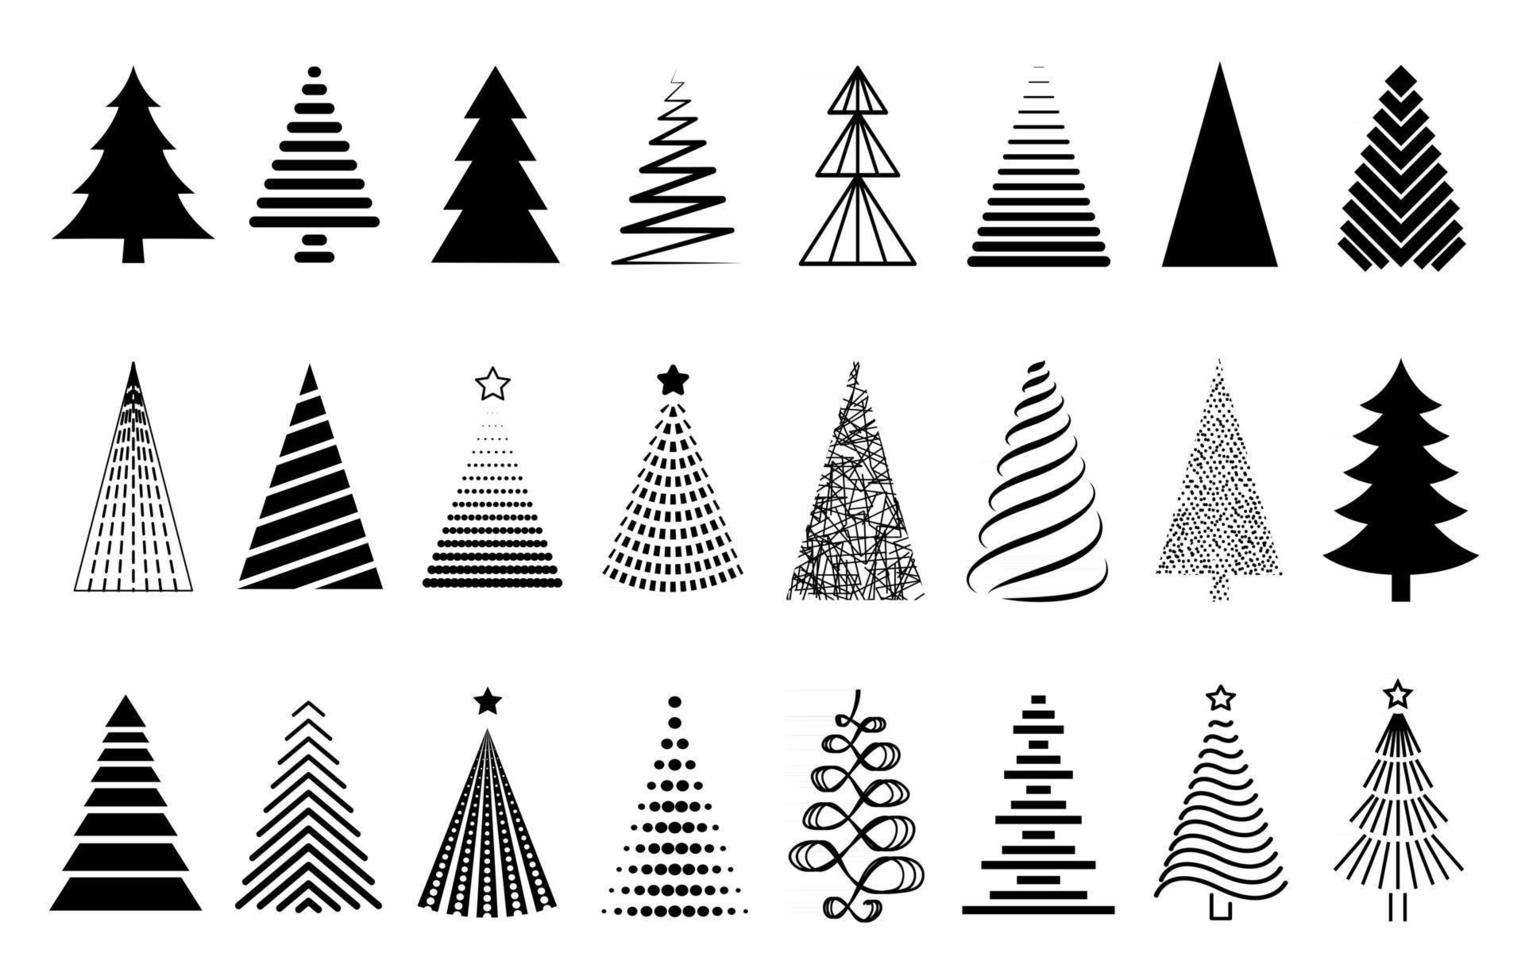 vector zwarte kerstboom set. collectie van decoratieve gestileerde kerstboom geïsoleerd op een witte achtergrond. abstracte decoraties, ontwerpelementen.